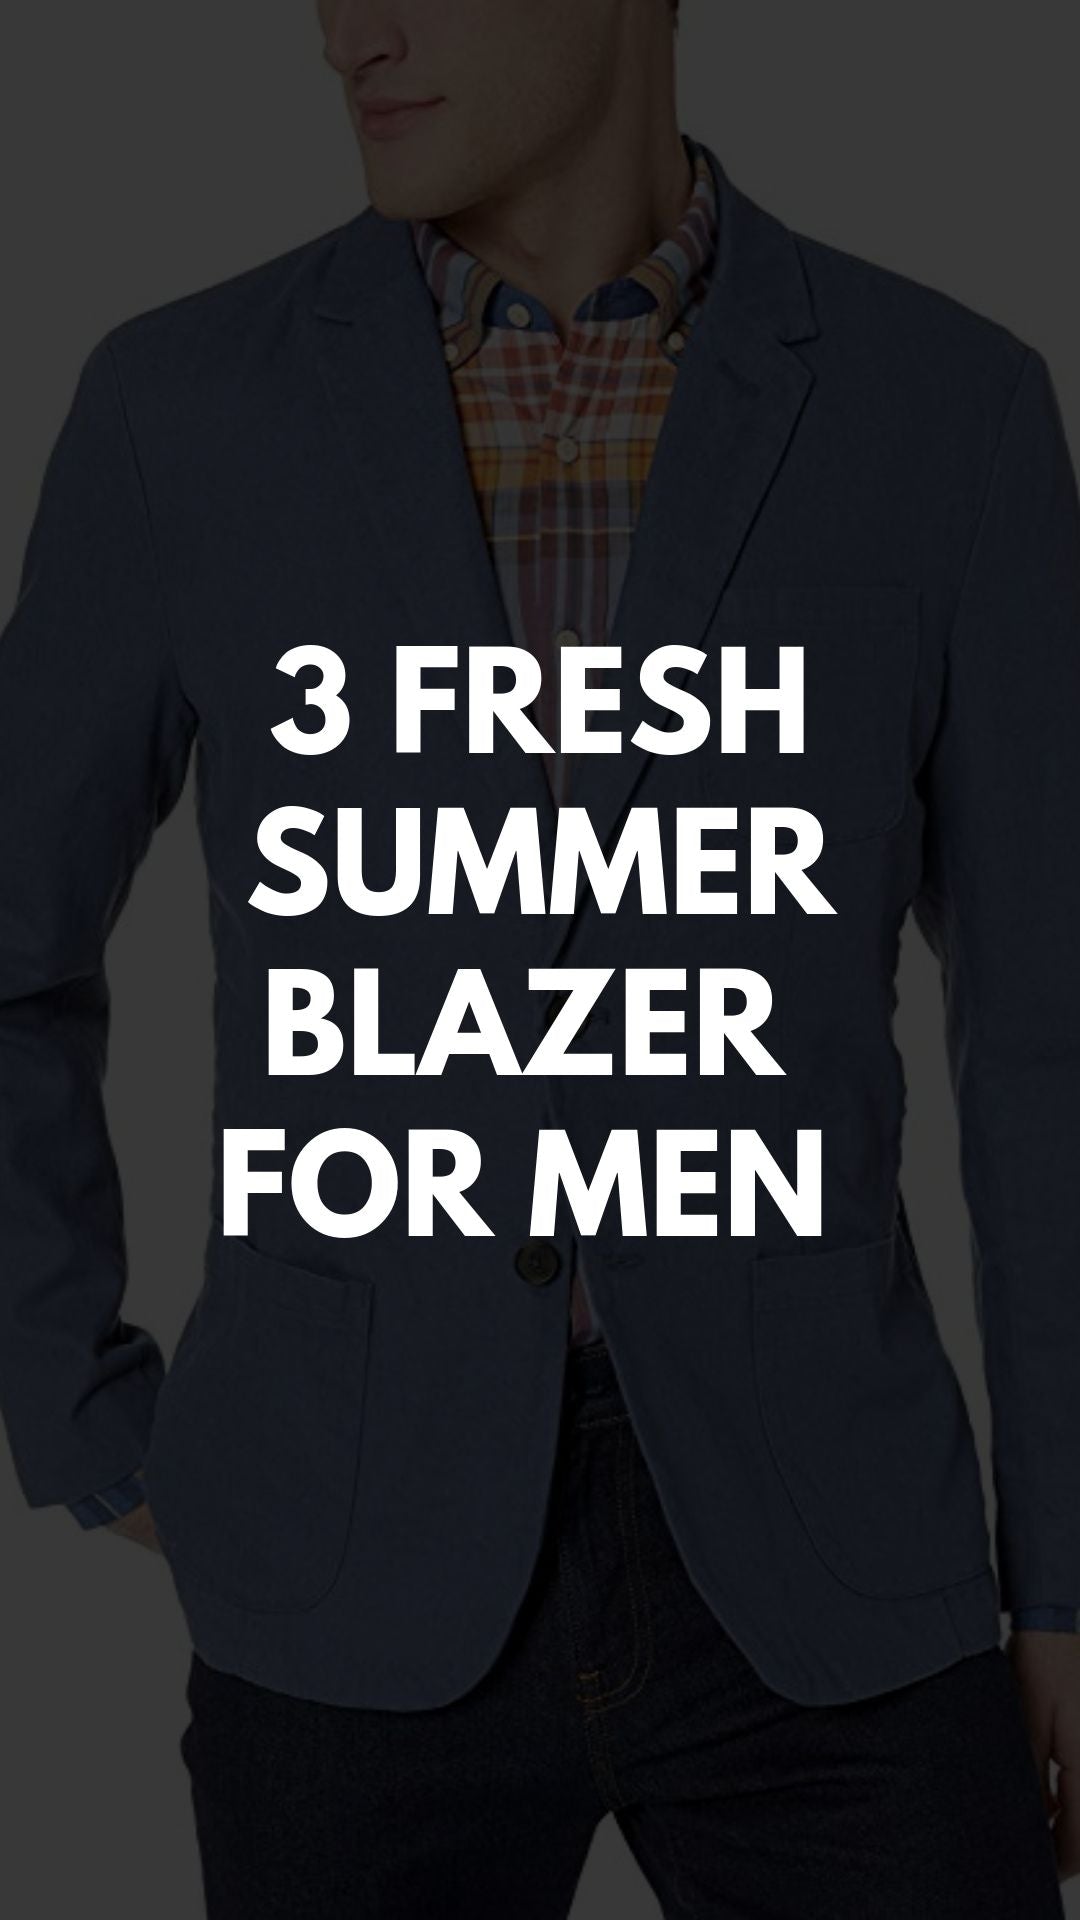 3 FRESH SUMMER BLAZER FOR MEN